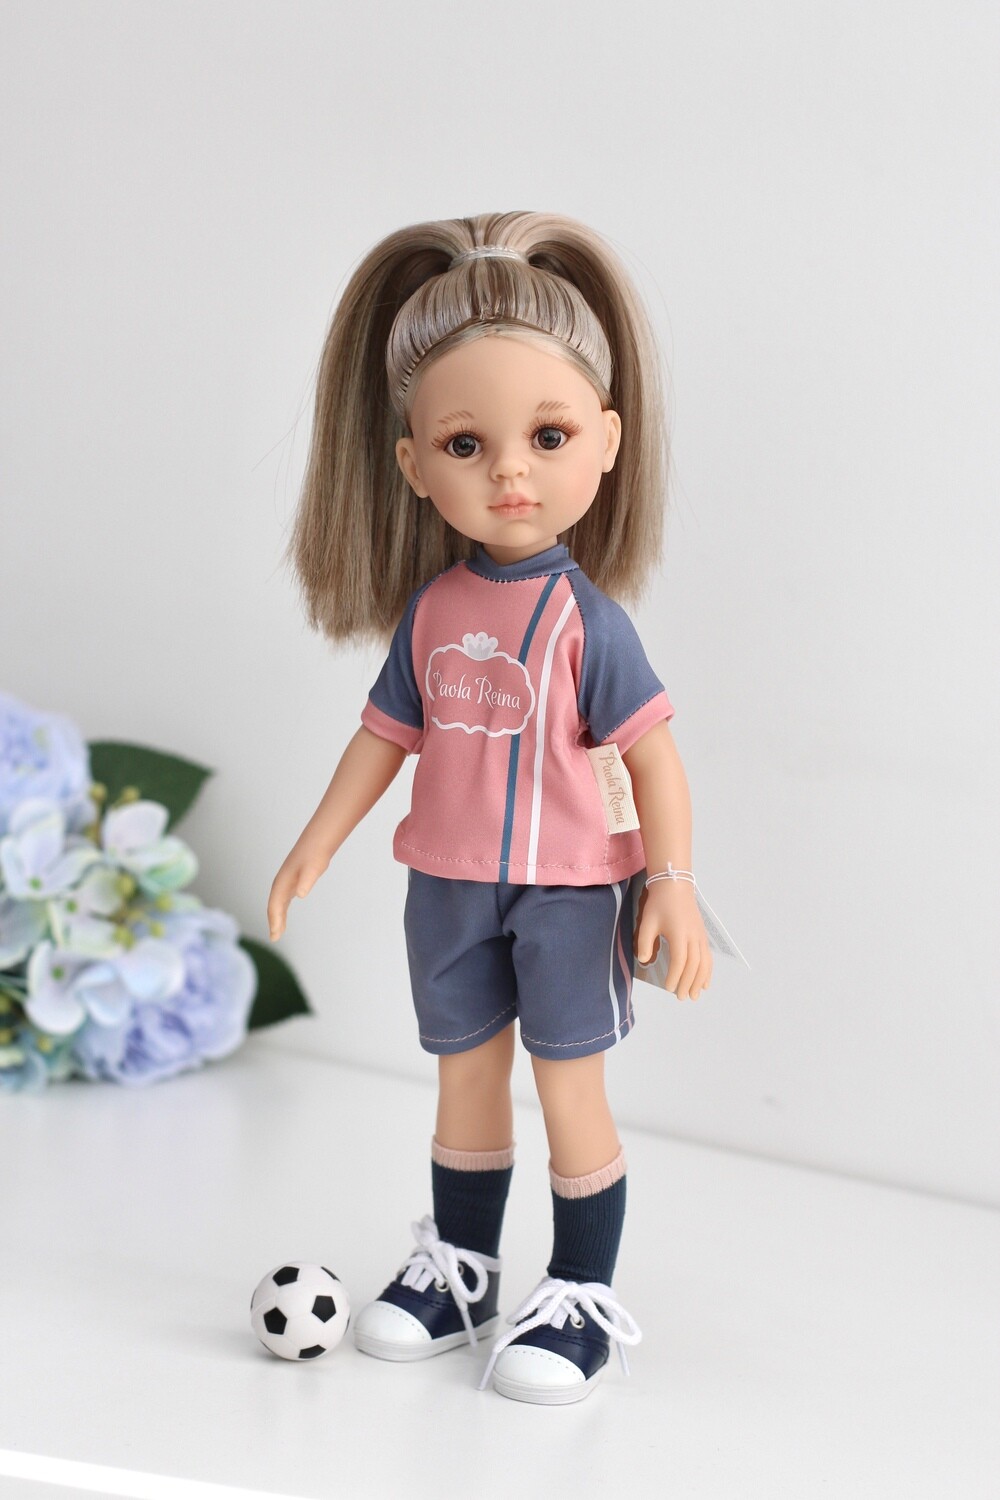 Кукла Моника футболистка, Paola Reina Паола Рейна (в фабричном наряде), 34 см